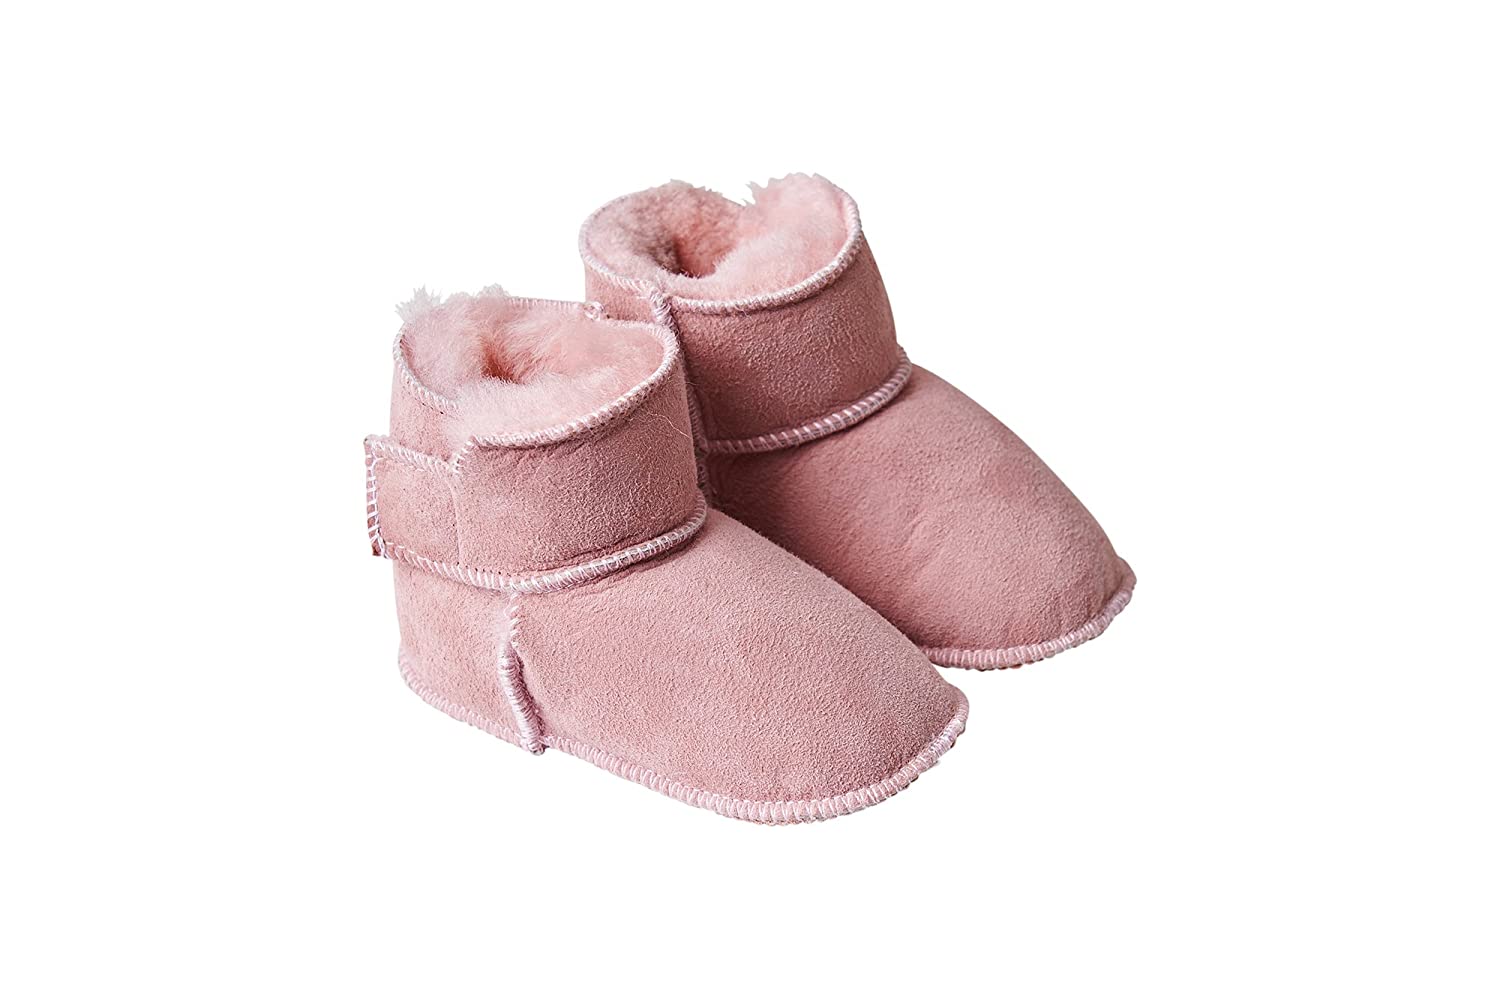 Fellhof 5101 Cuddly Baby Boots, Size 1 (16/17) 20/21